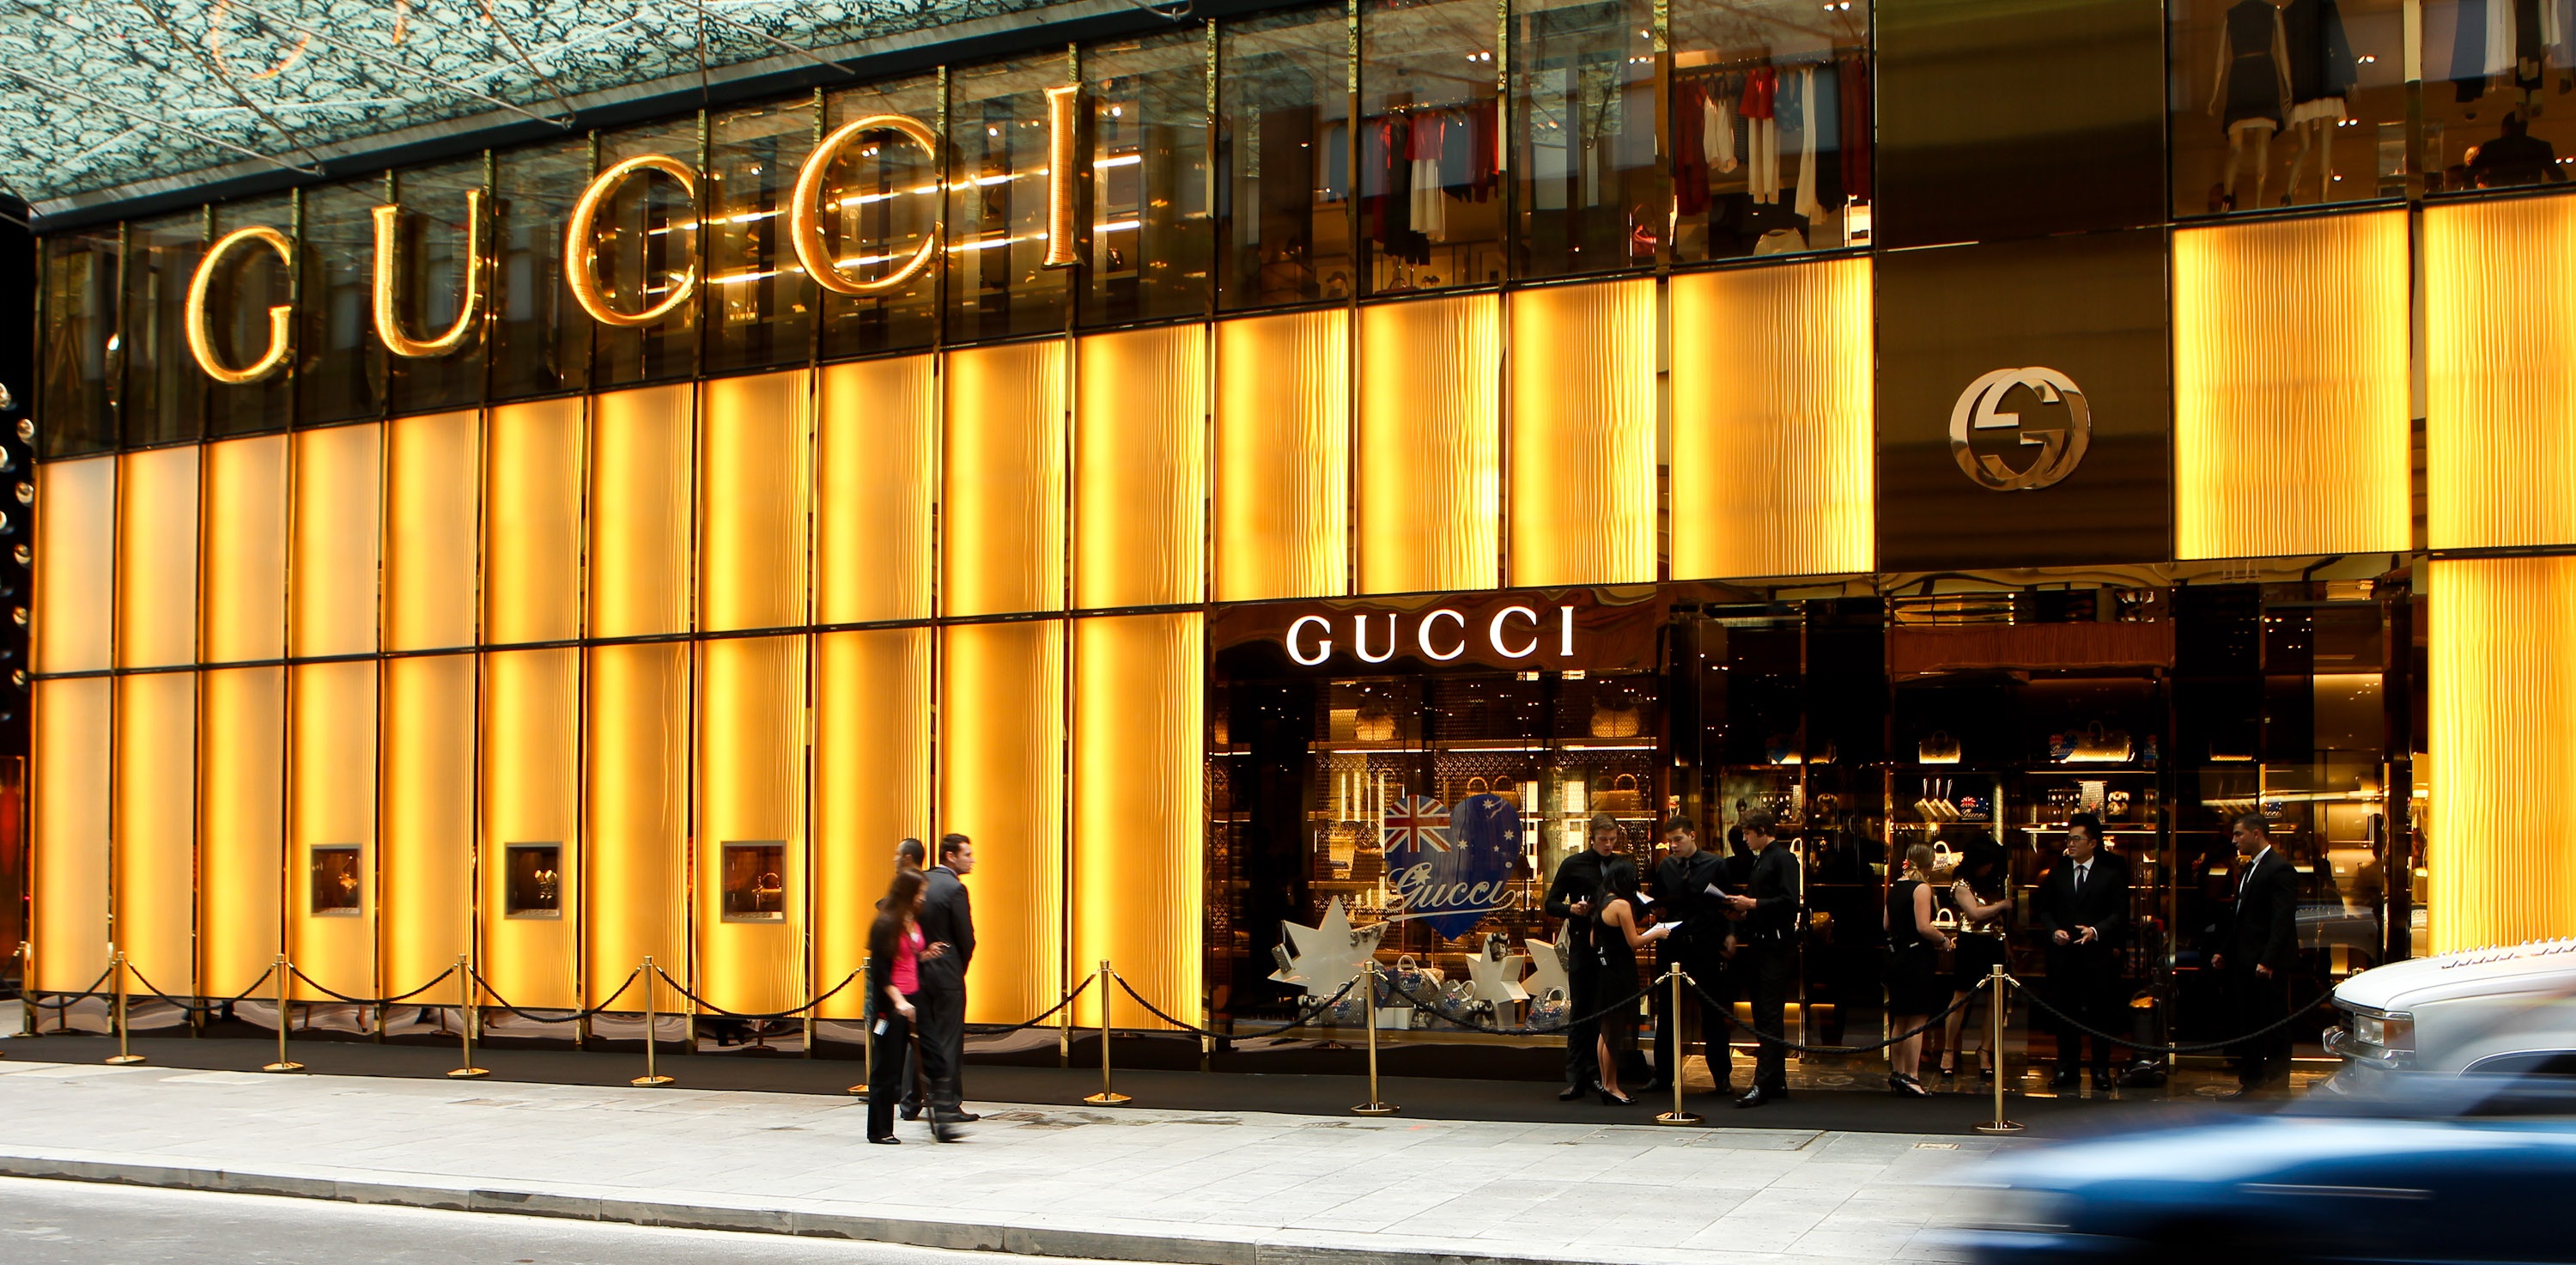 Gucci abre nova loja no Brasil, desta vez no Rio de Janeiro